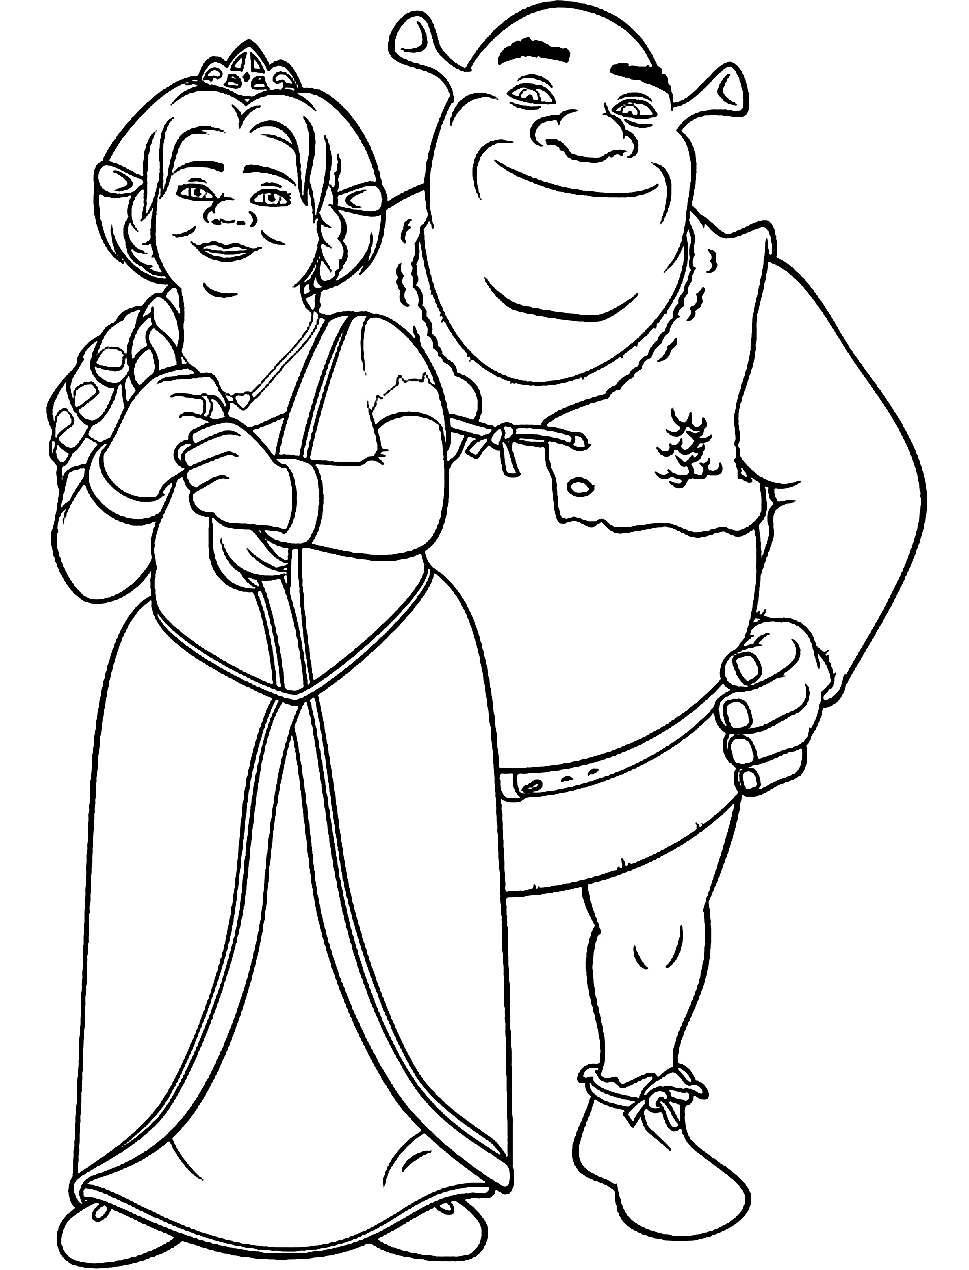 Fiona und Shrek freuen sich über Shrek